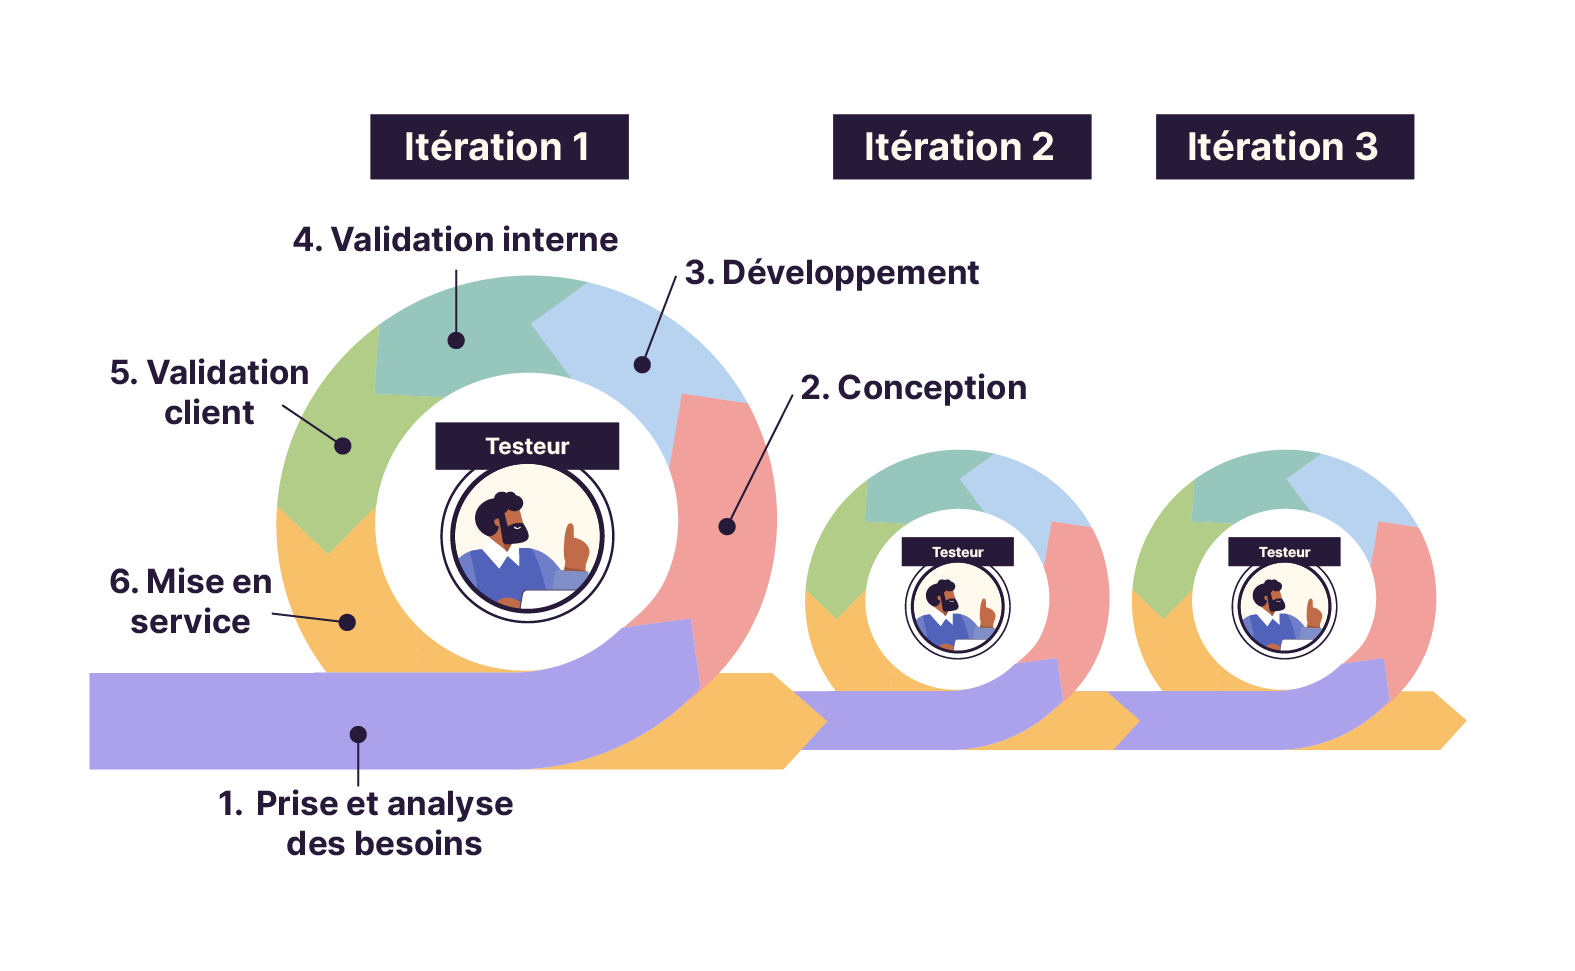 Un sprint compte 6 phases successives : prise et analyse des besoins, conception, développement, validation internet, validation client et mise en service